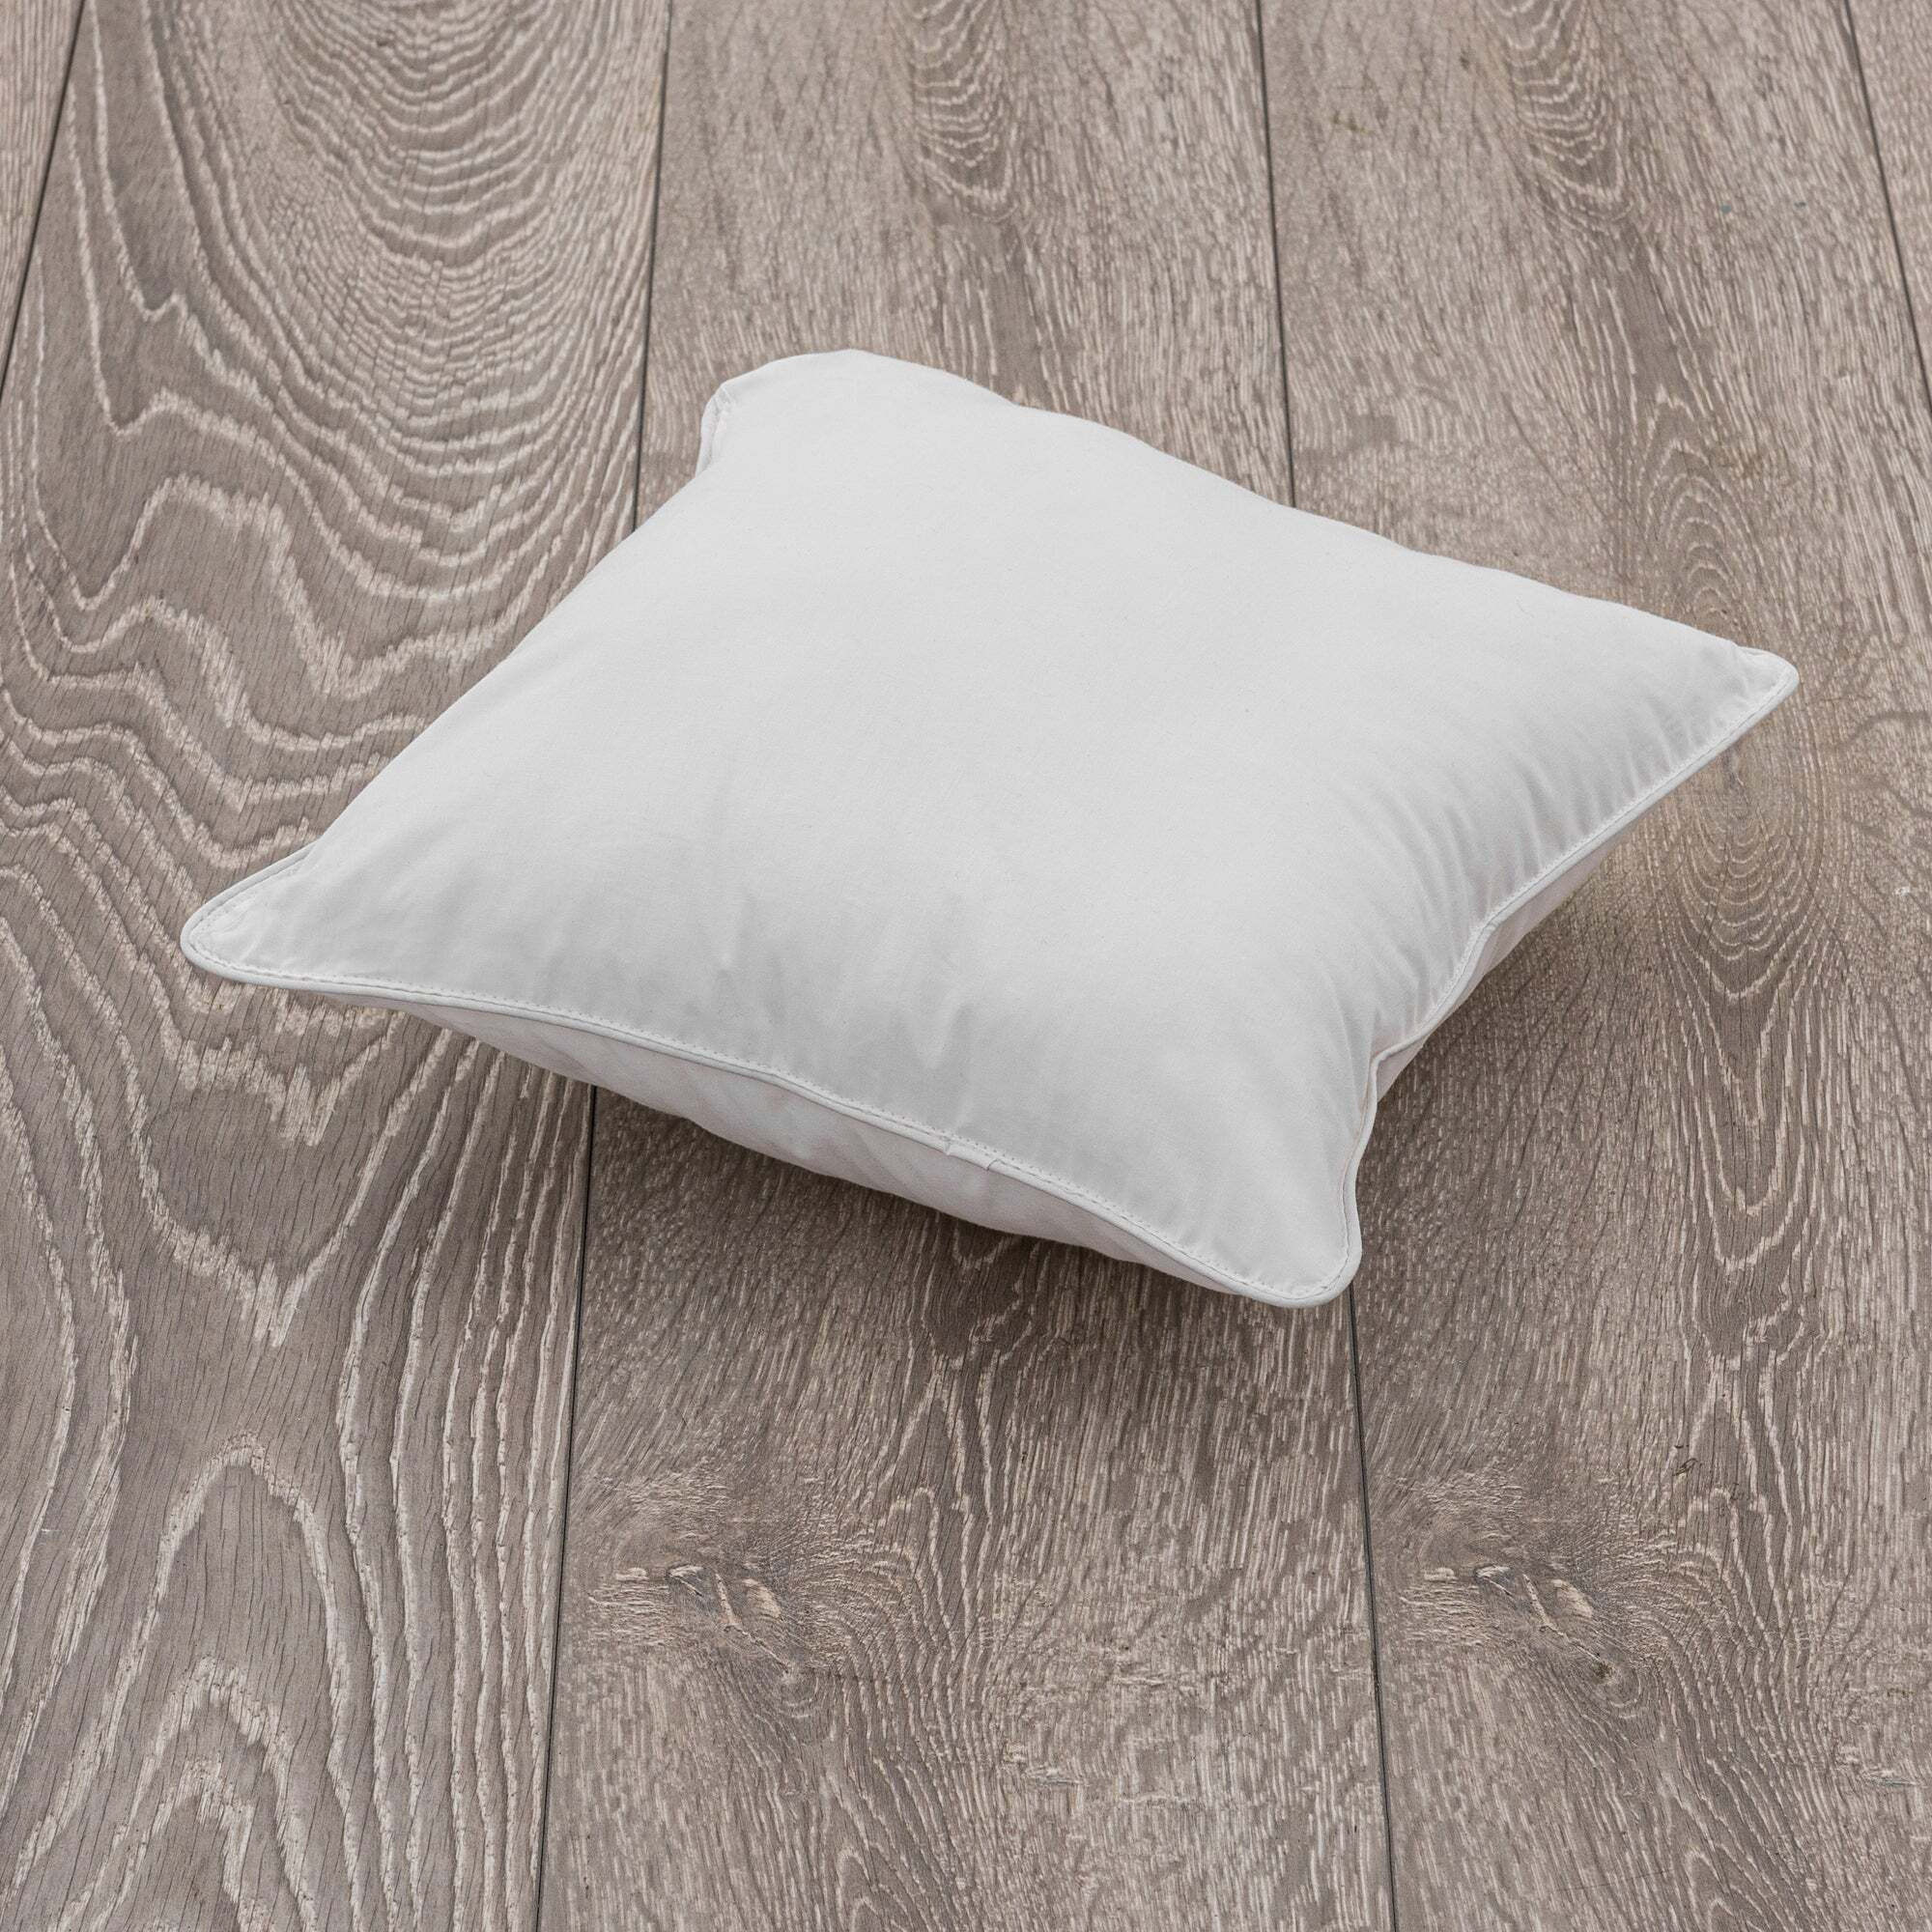 Cotton Cushion Pad (35cm x 35cm) White